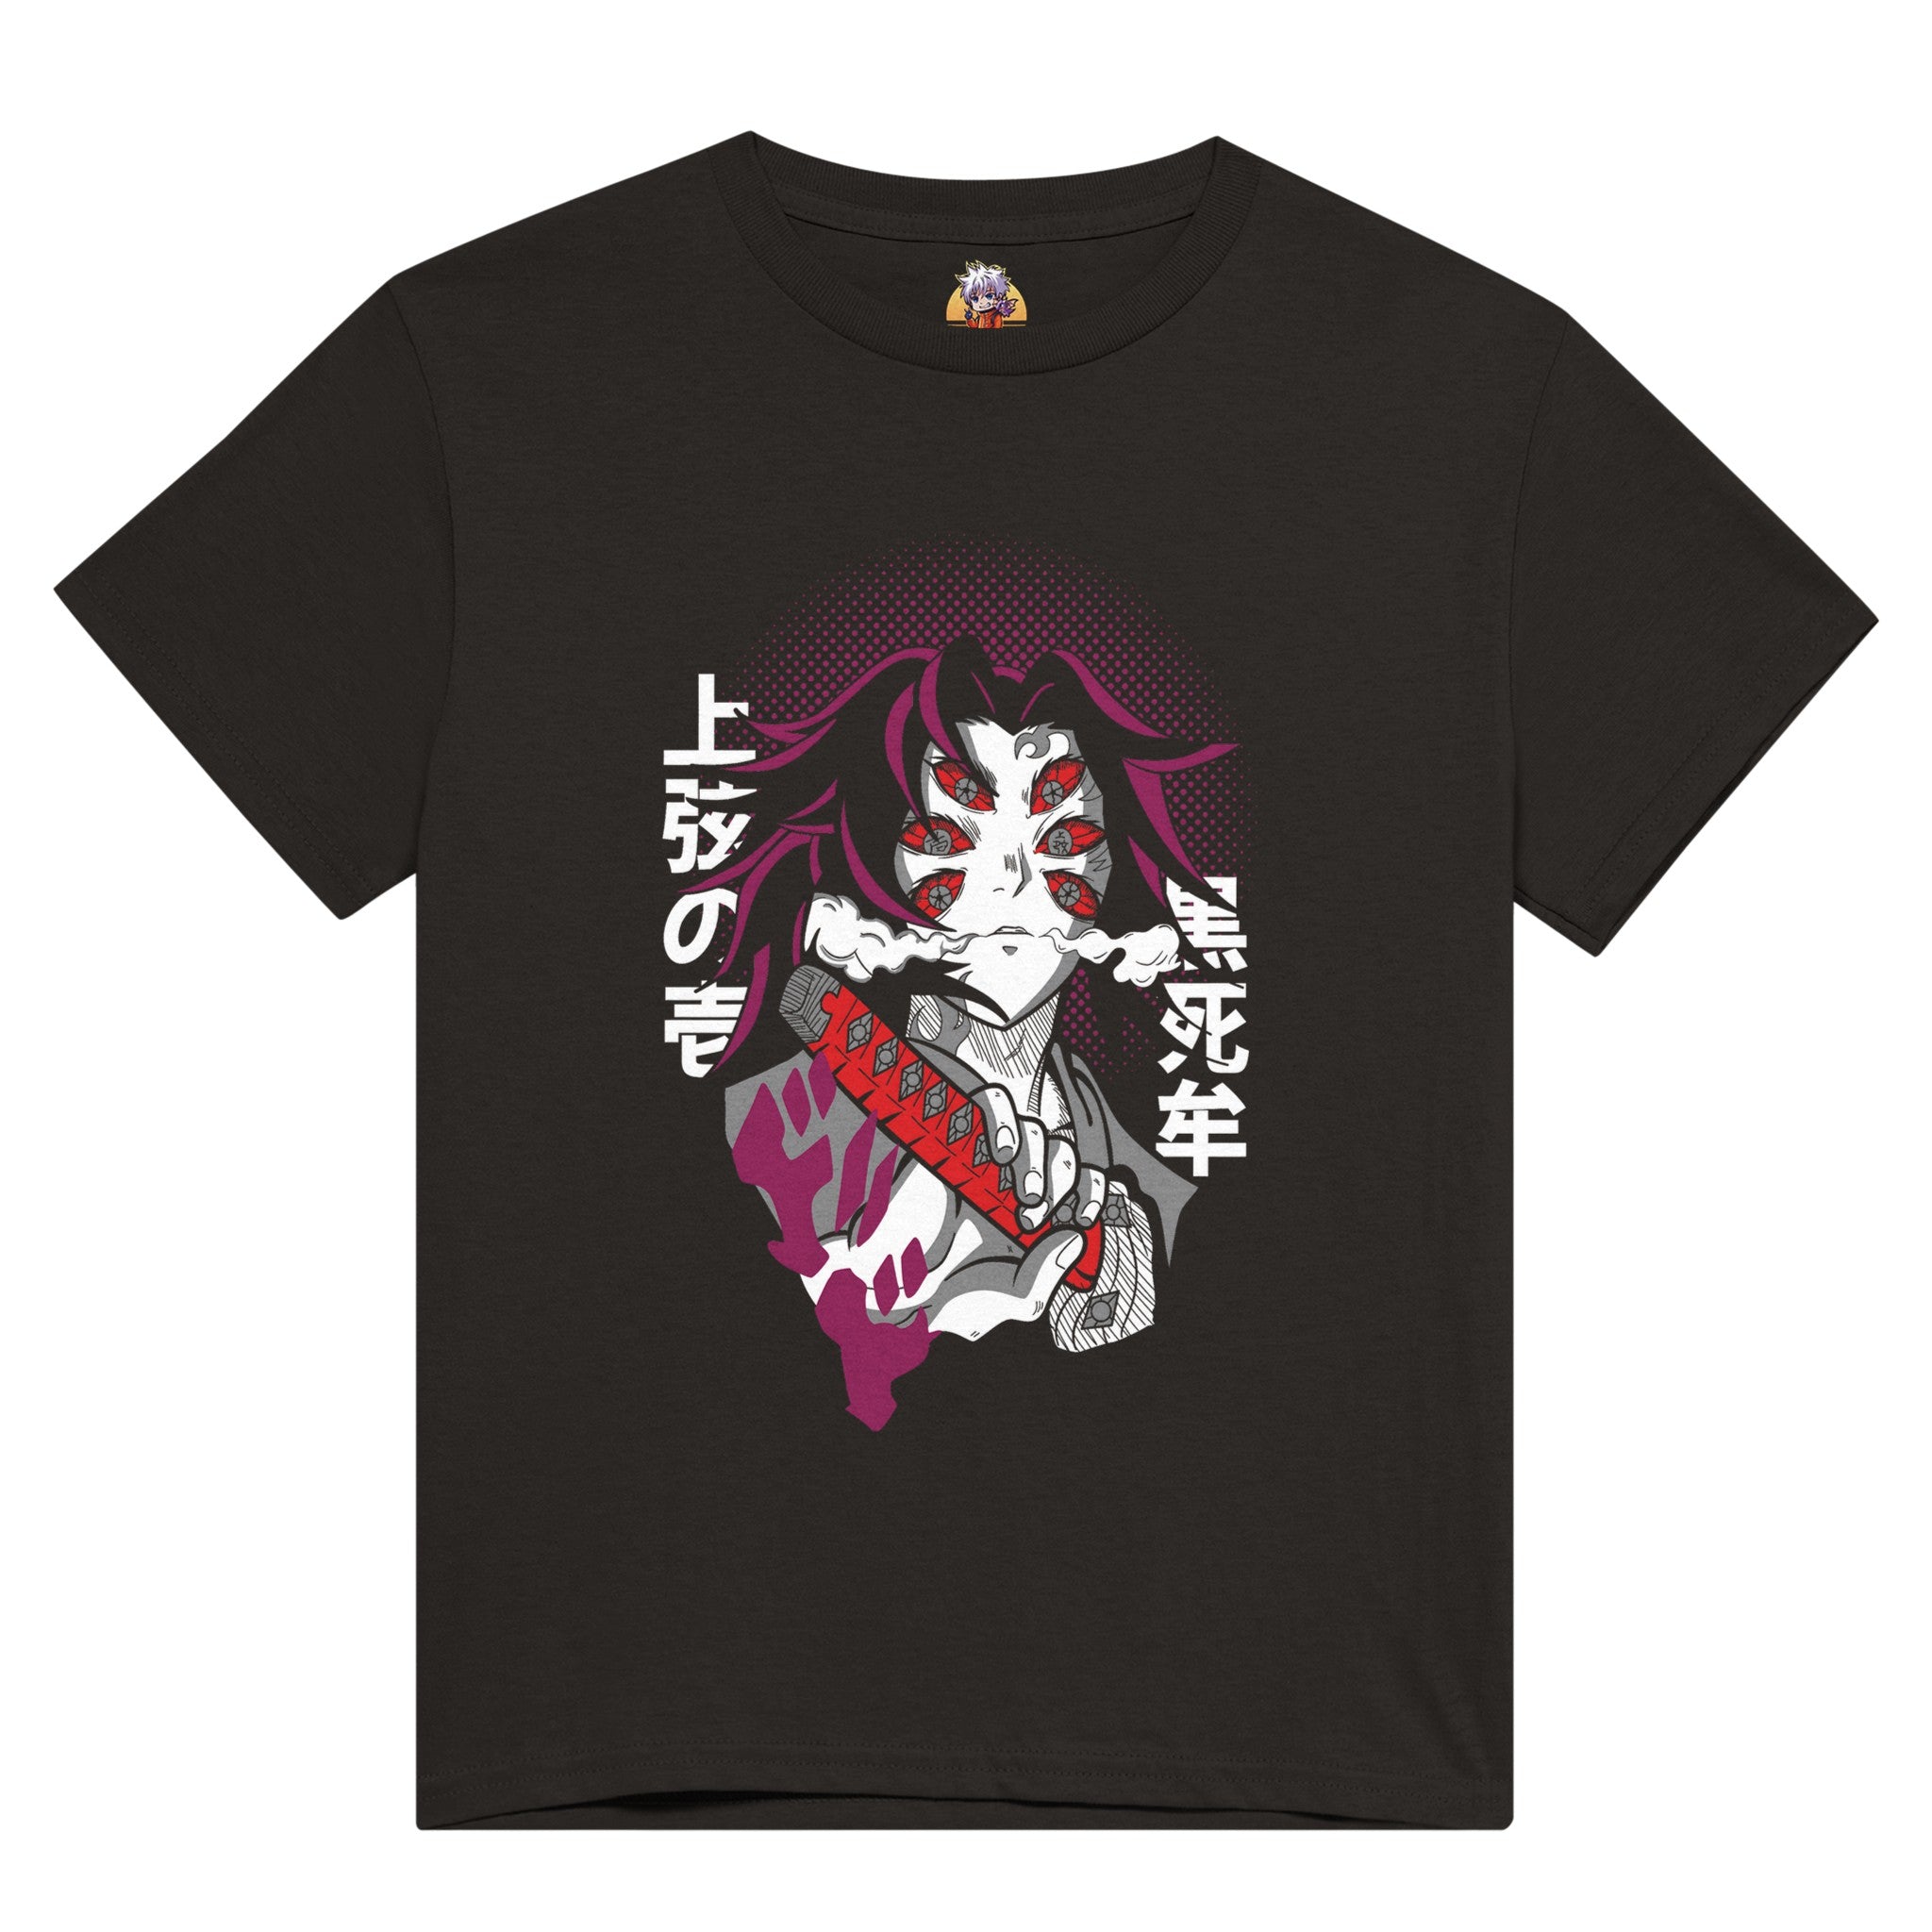 shop and buy demon slayer anime clothing Kokushibo t-shirt